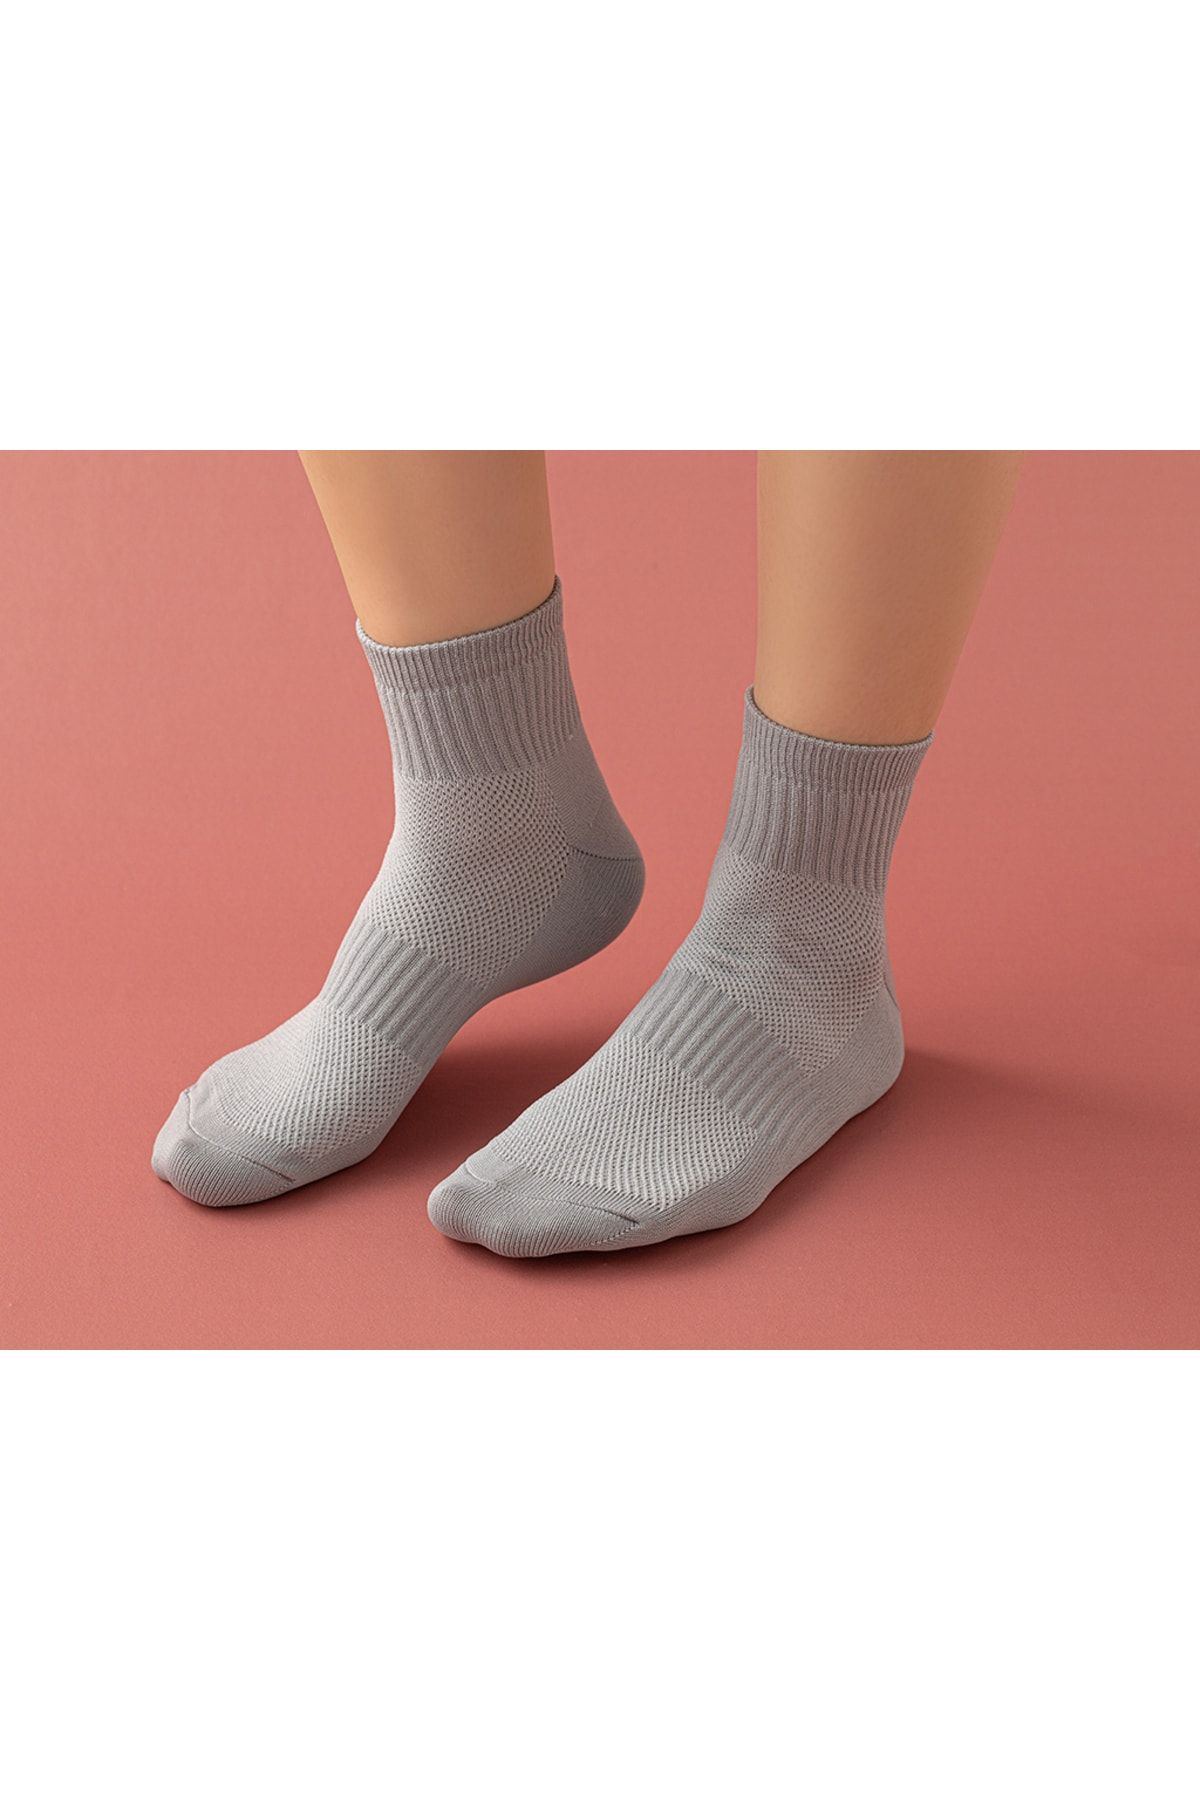 English Home Tery Kadın 3'lü Spor Çorap 36-40 Siyah-beyaz-gri